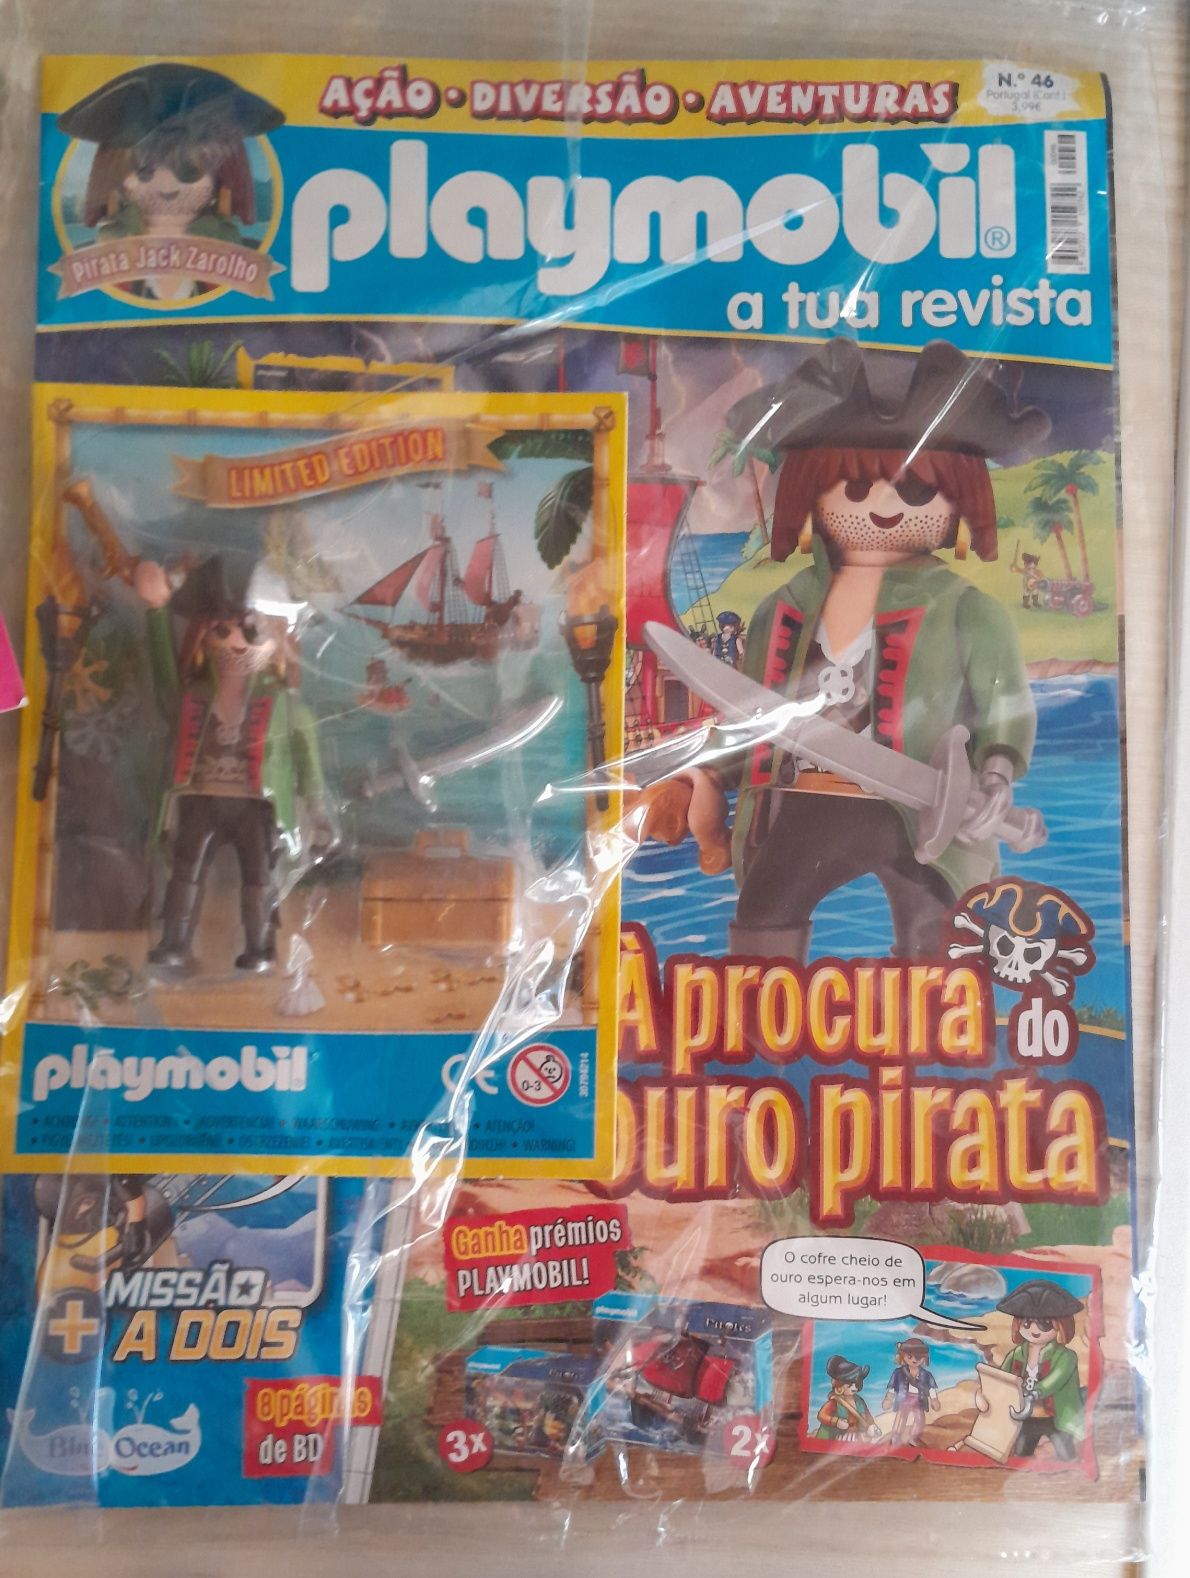 Playmobil lote figura boneco animais acessório revista edição limitada